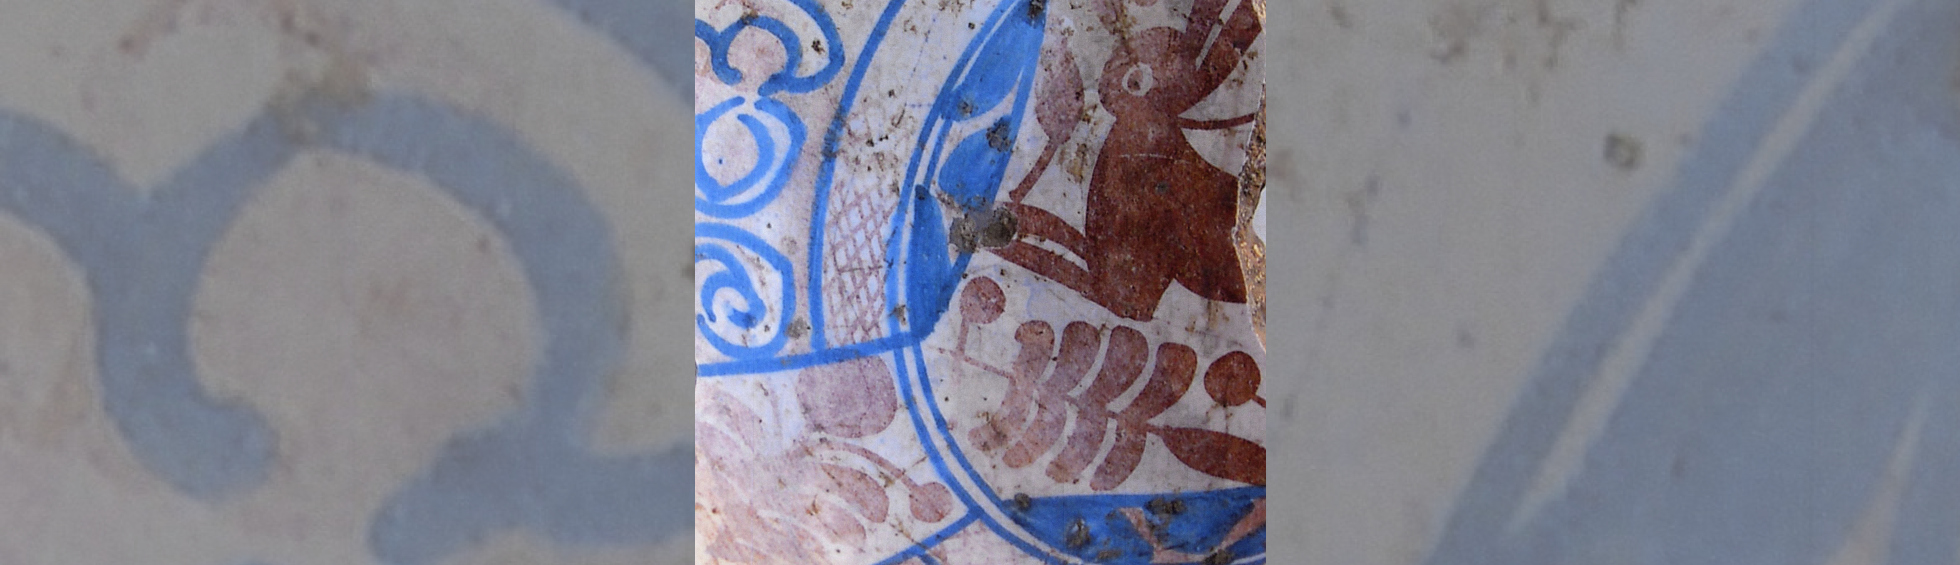 céramique trouvée dans les fouilles dans la zone du call:décor géométrique avec un lapin ou un lièvre